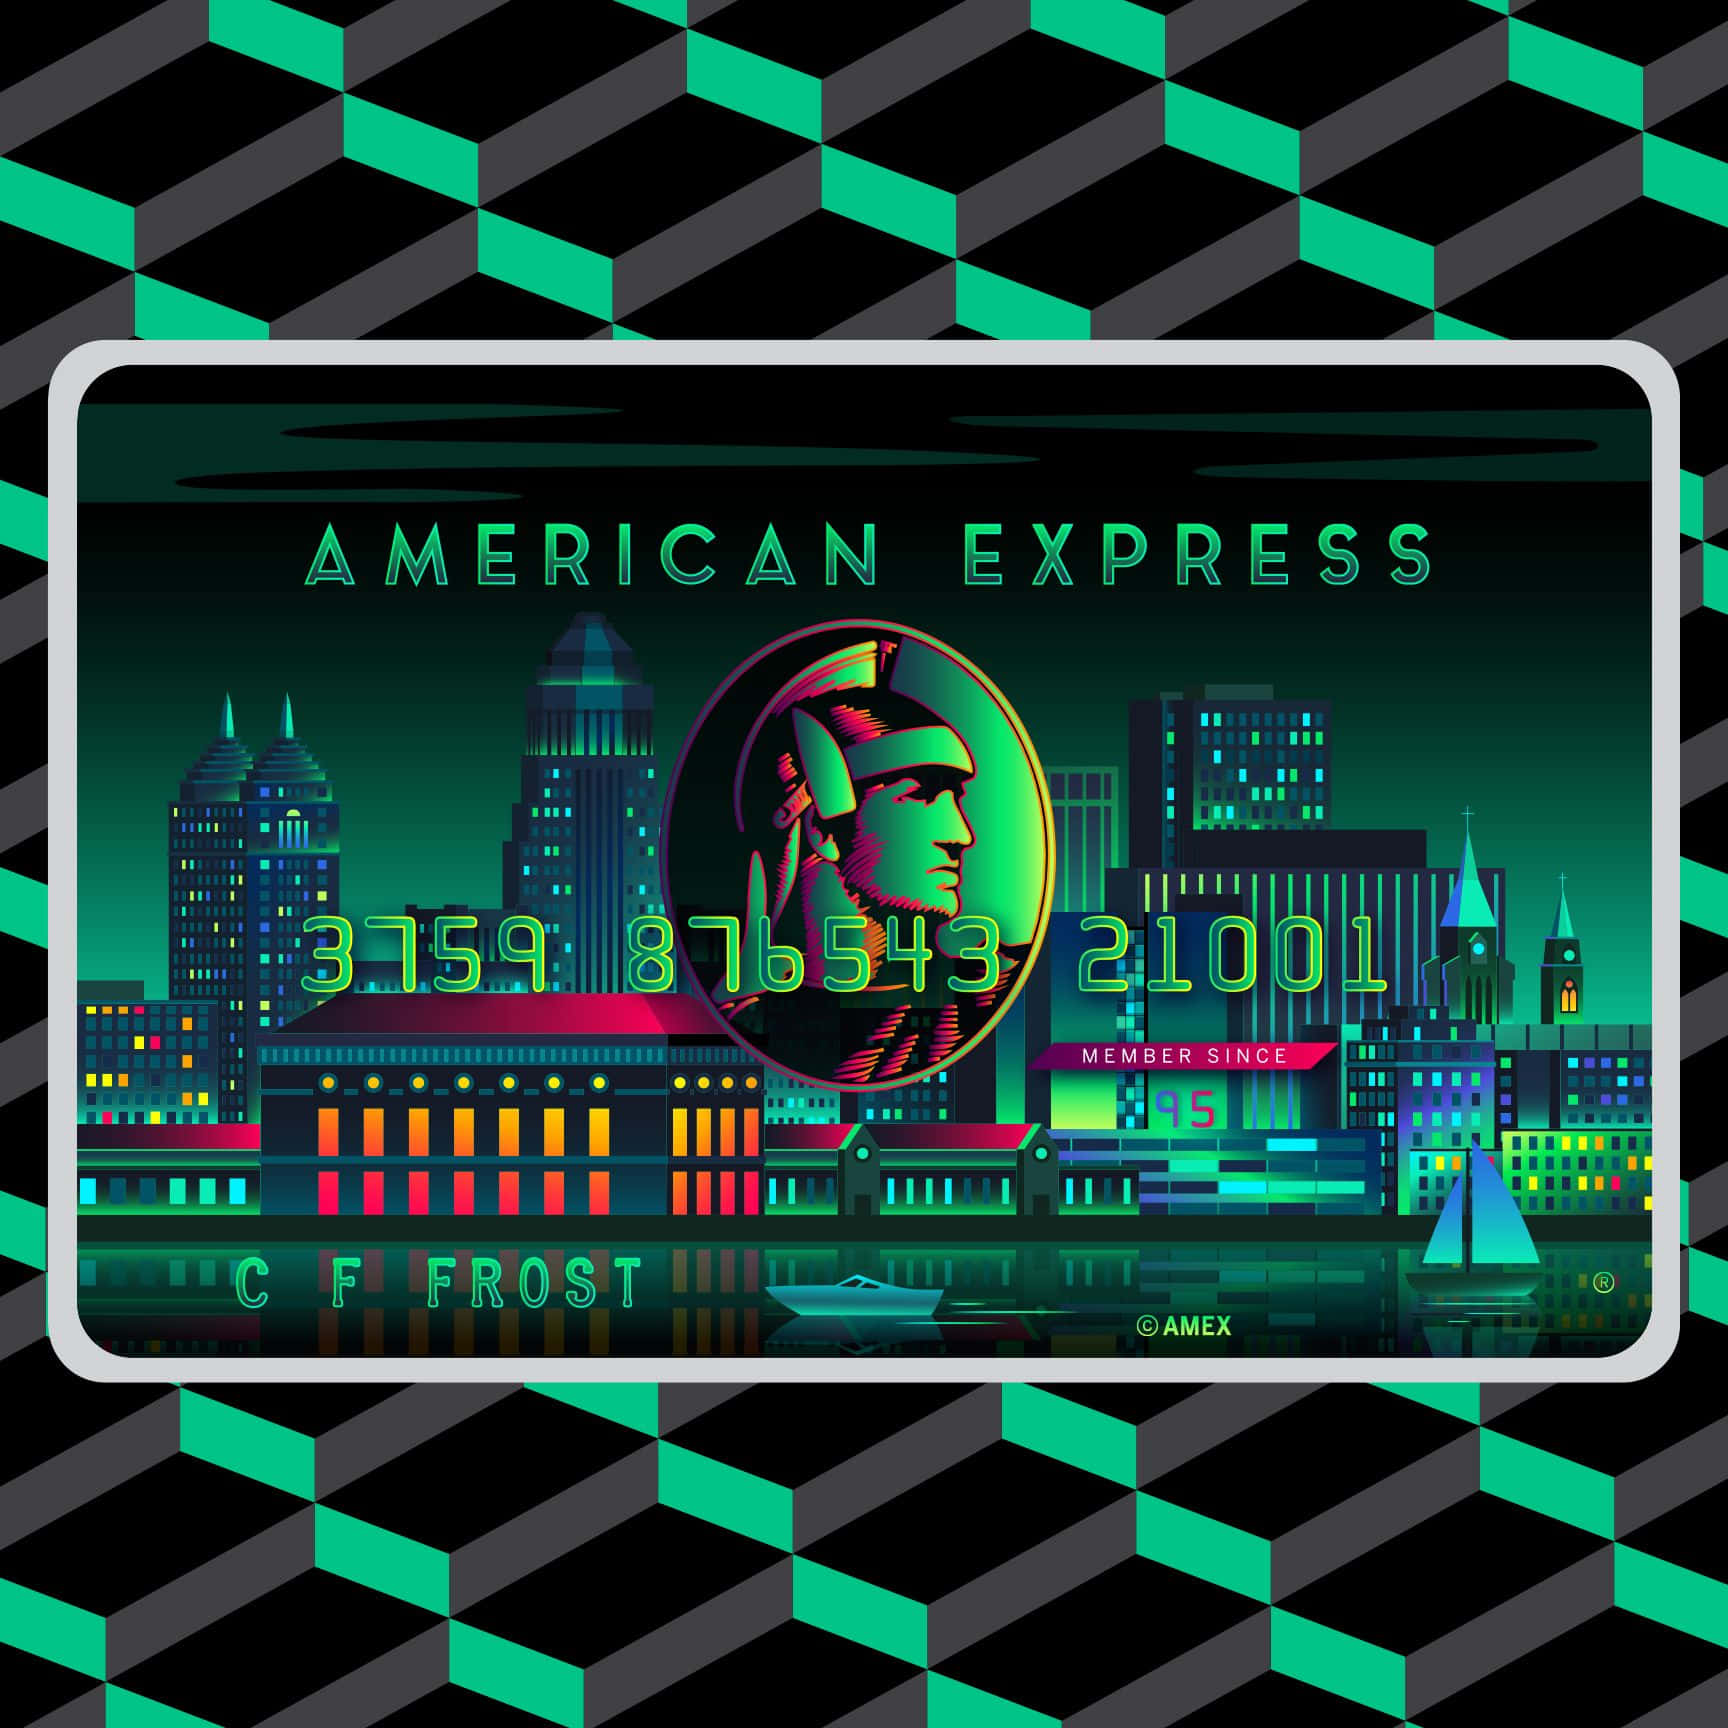 Pagamentisicuri E Convenienti Con American Express